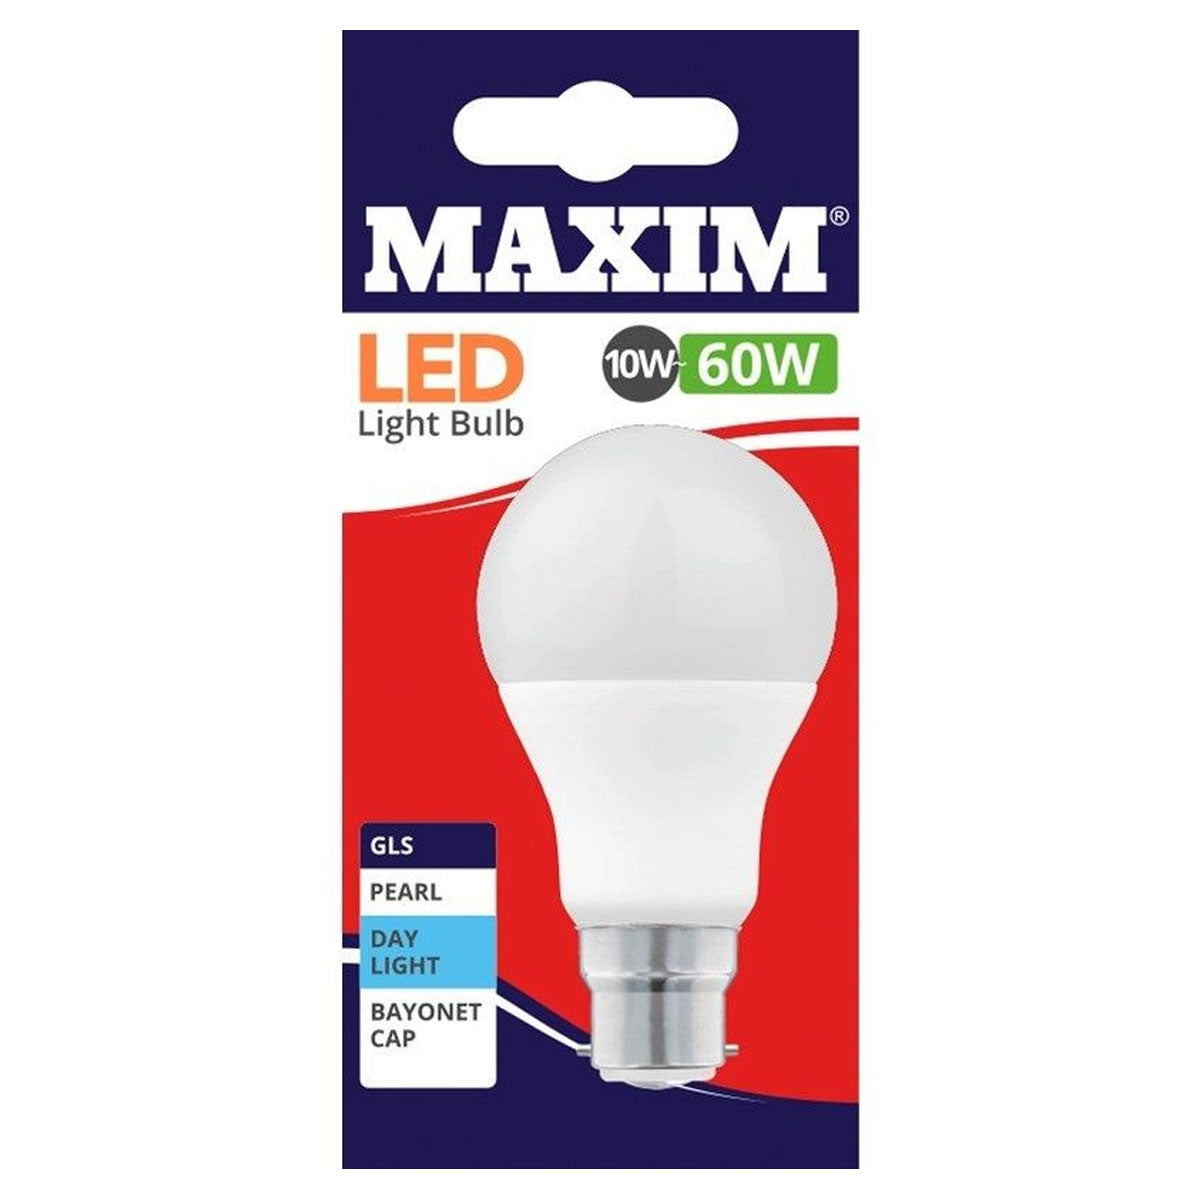 Maxim - LED GLS 10W Lightbulb - Daylight in white packaging.